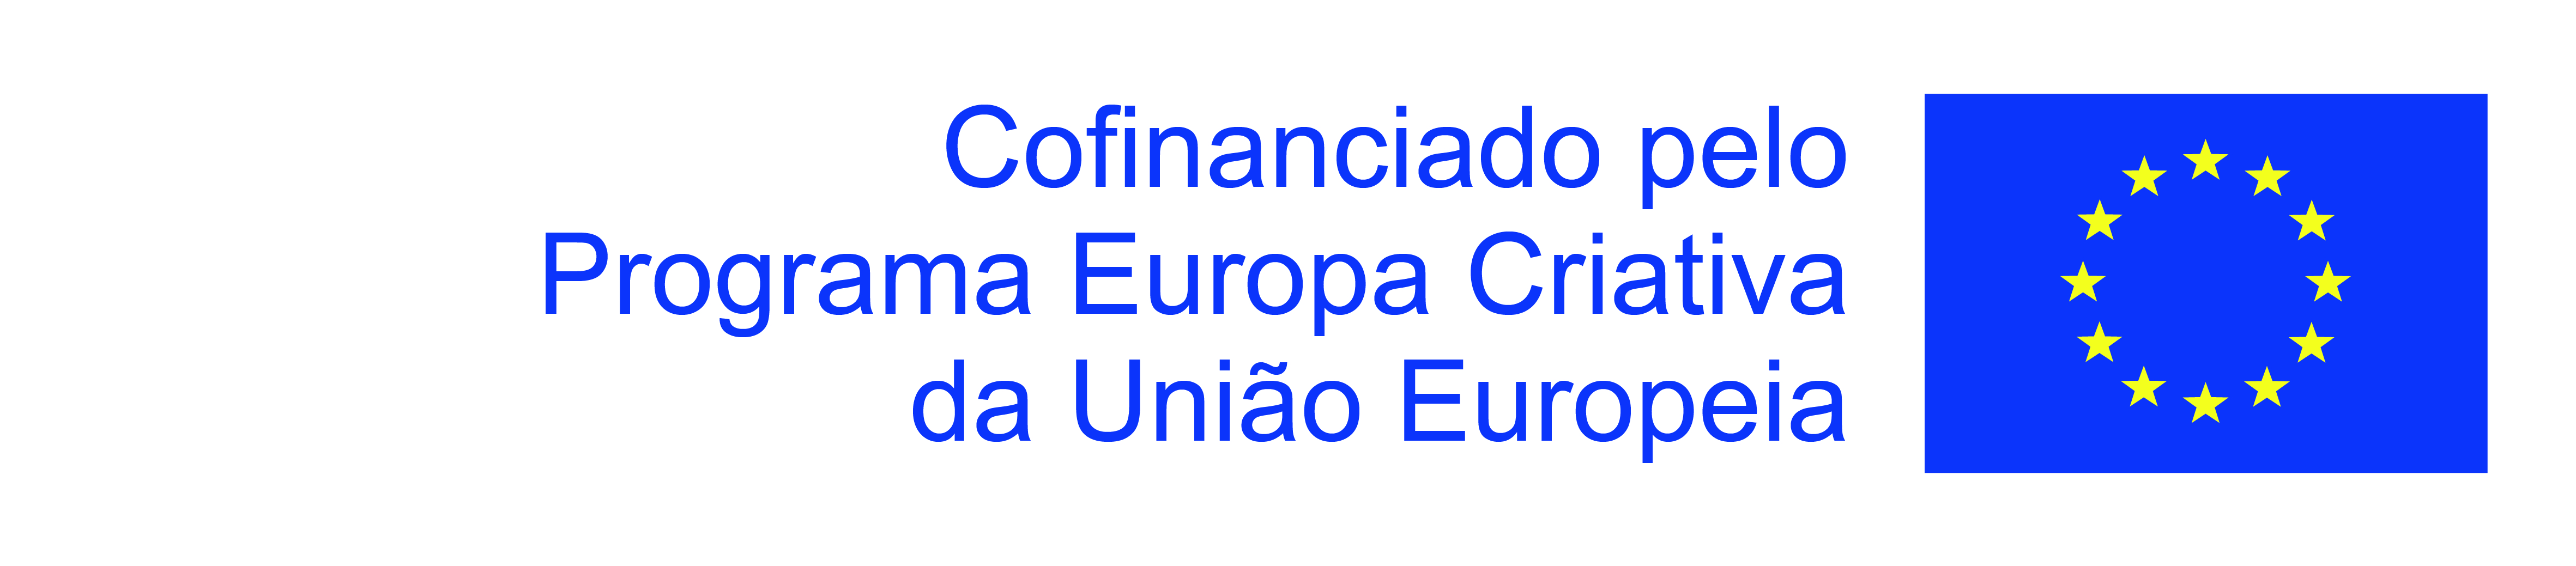 Logo - Cofinanciado pelo Programa Europa Criativa da União Europeia